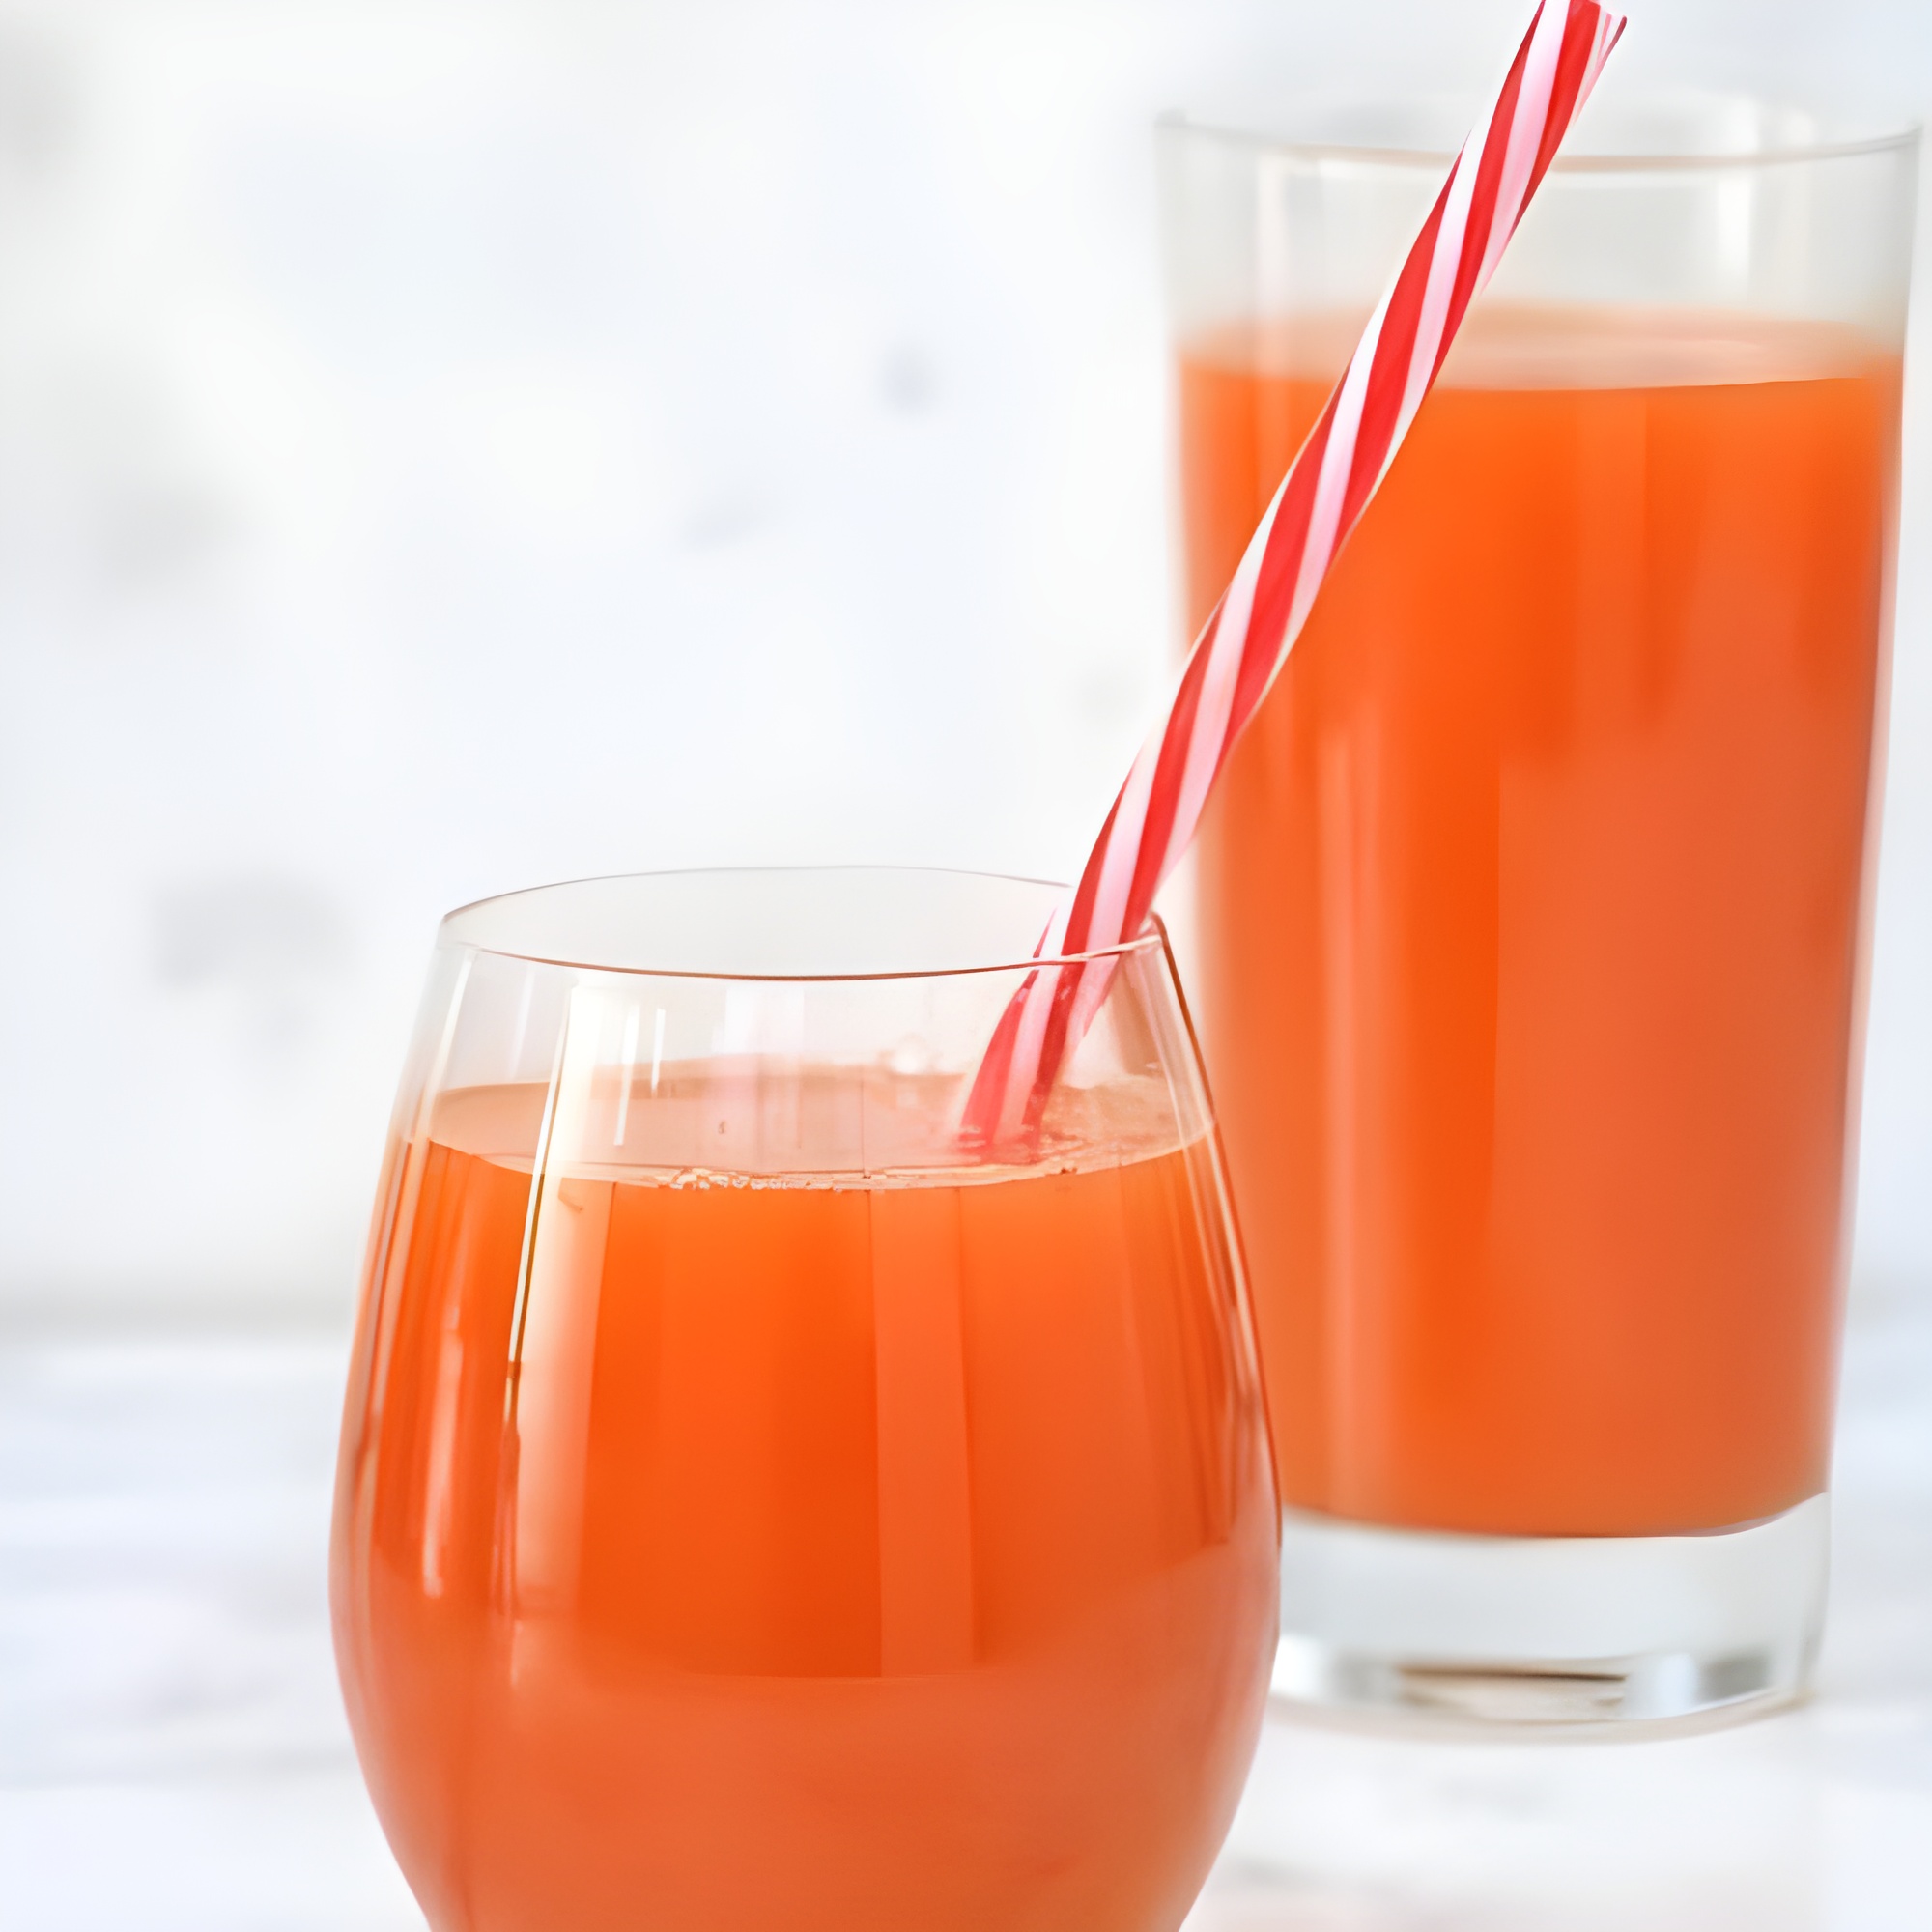 Carrot juice for pancreatitis